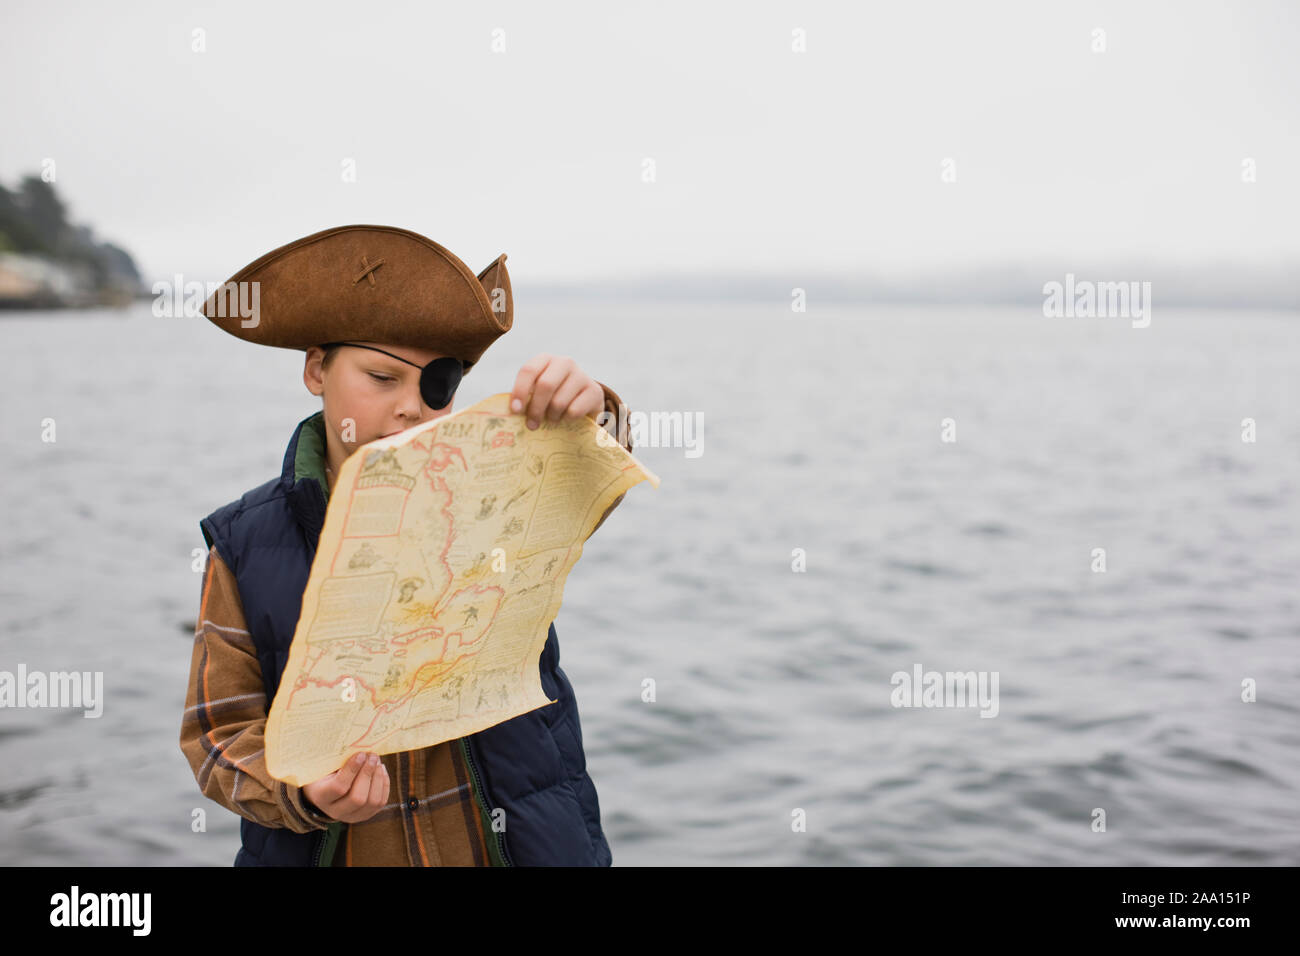 Un Niño Vestido Como Pirata Presenta En El Estudio. Aislado En Blanco  Fotos, retratos, imágenes y fotografía de archivo libres de derecho. Image  60096482